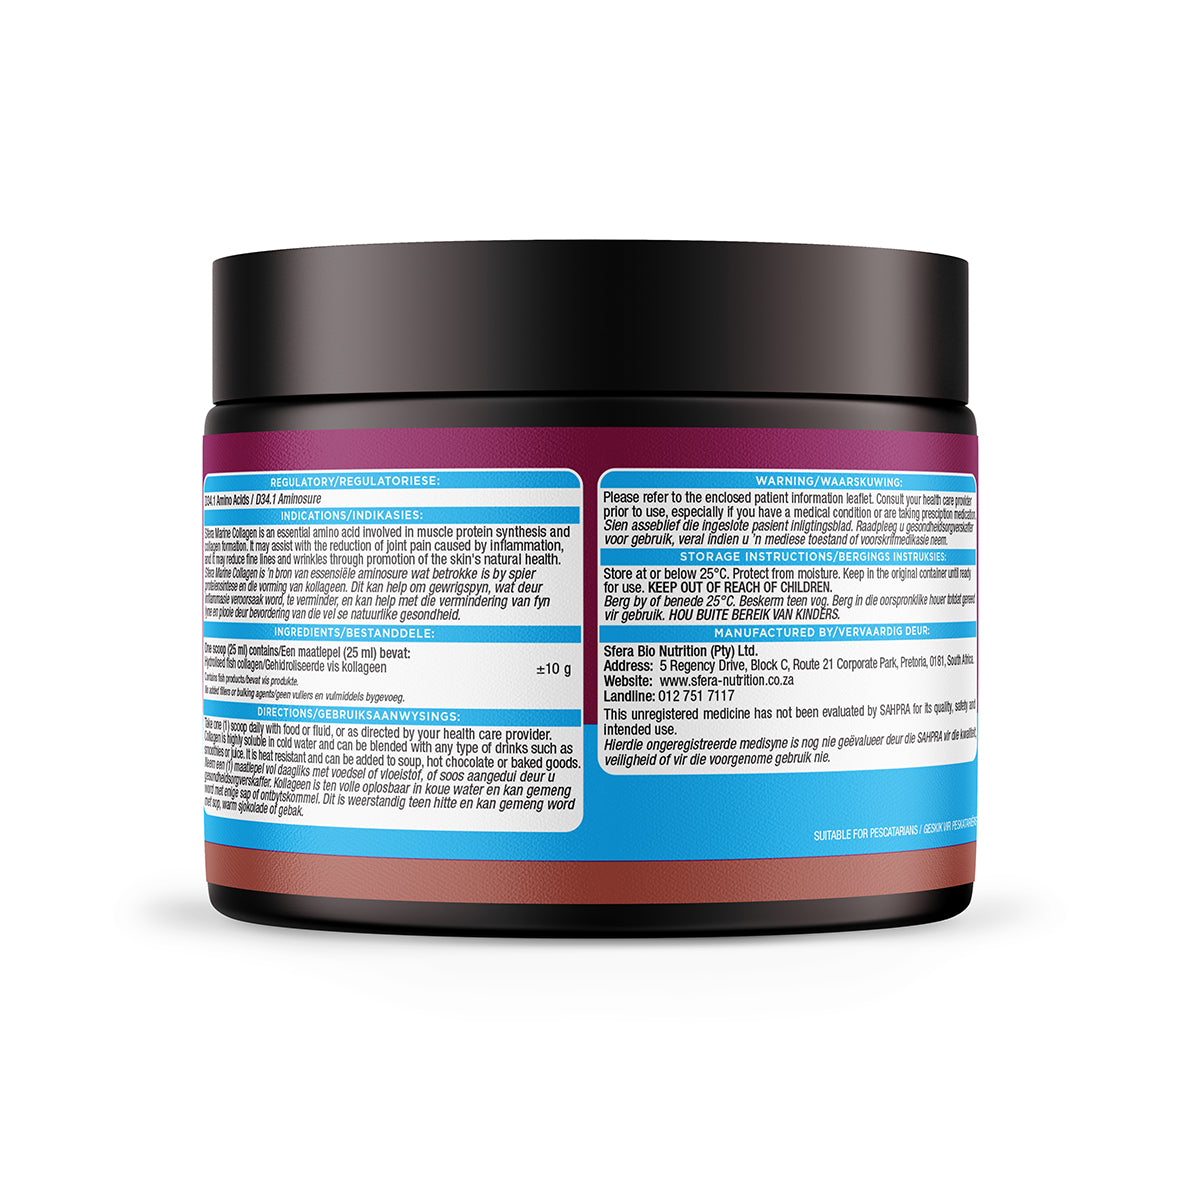 Sfera Marine Collagen Powder - 350g